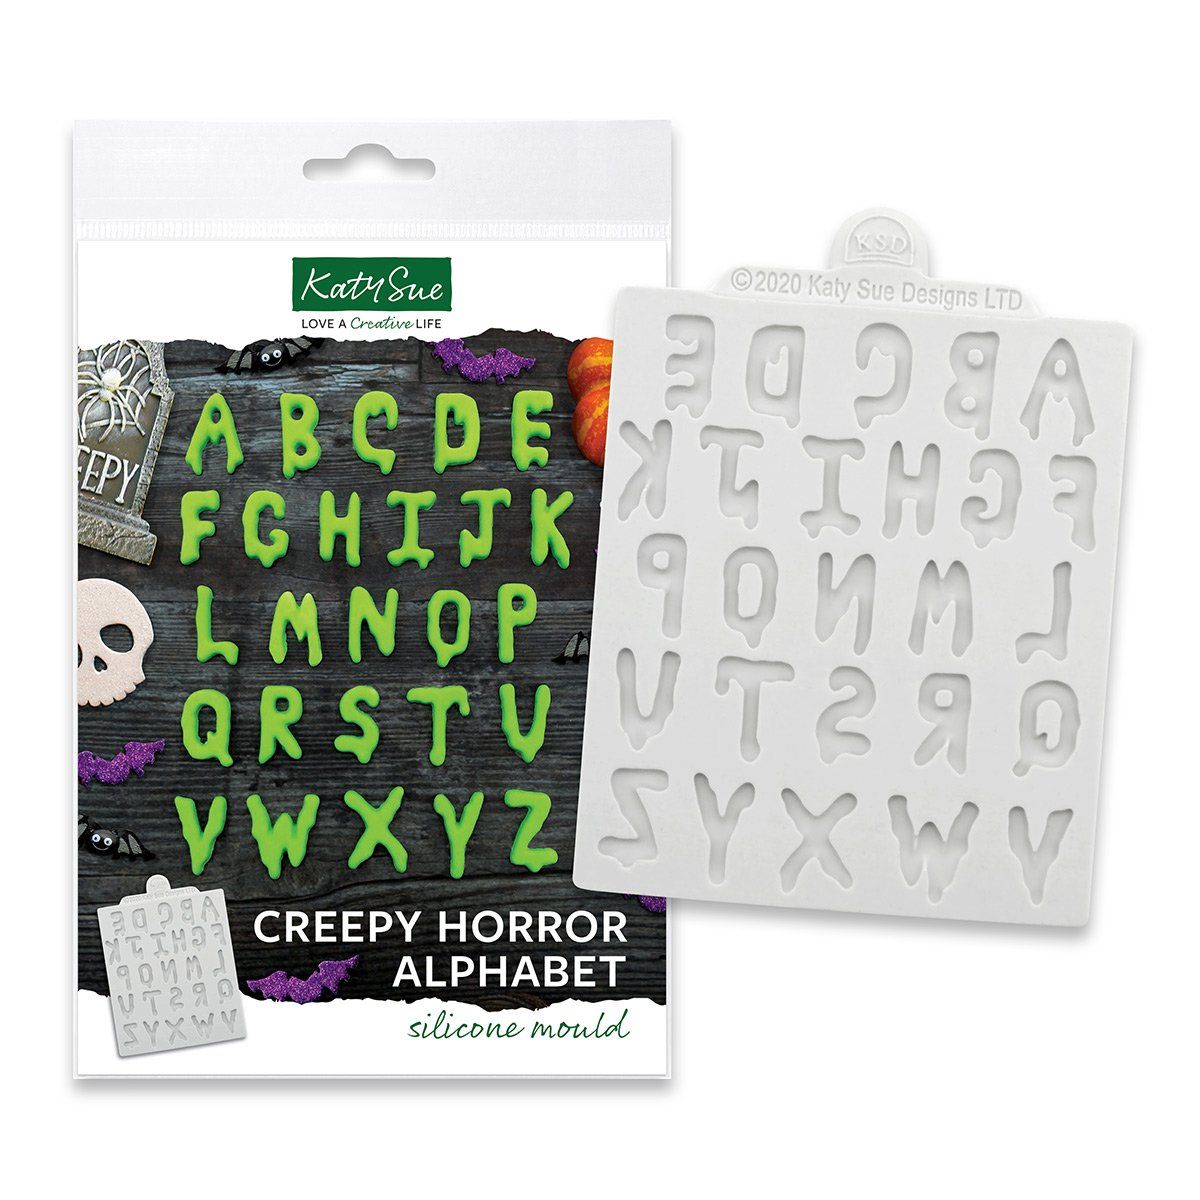 Billede af Creepy Horror Alphabet silikoneform - Katy Sue